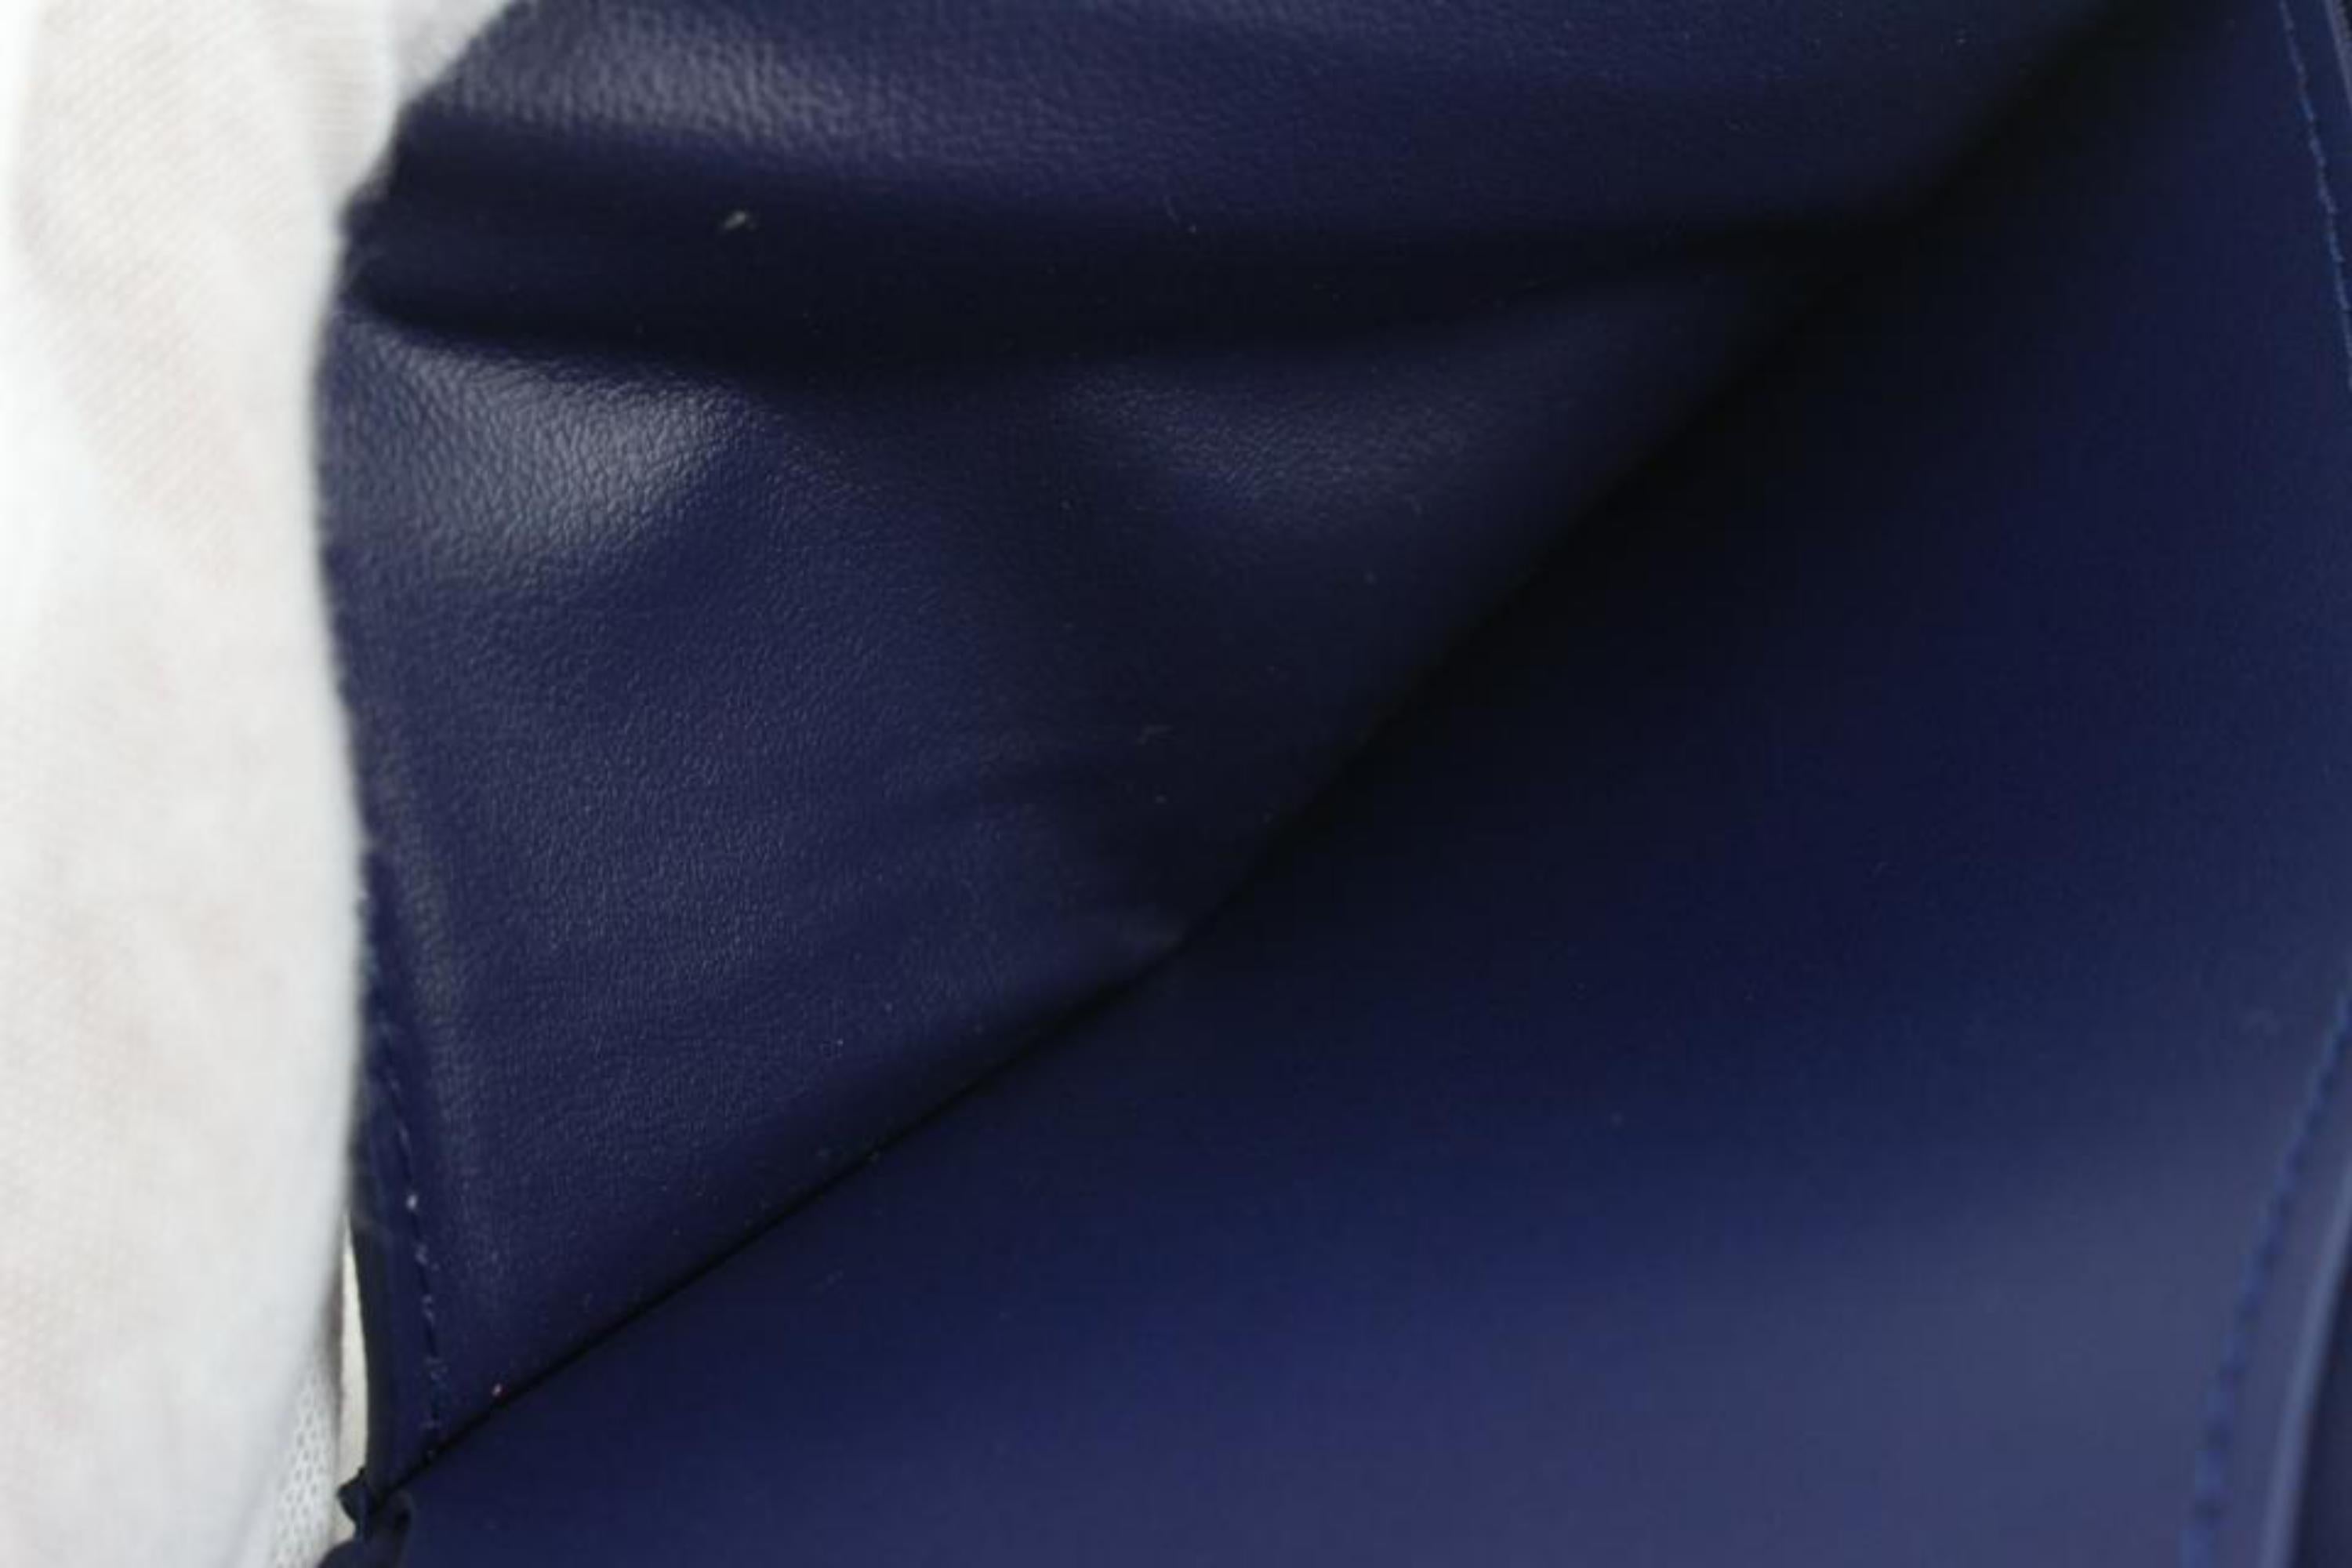 Louis Vuitton Monogram Bandana Leather And Cotton-canvas Denim